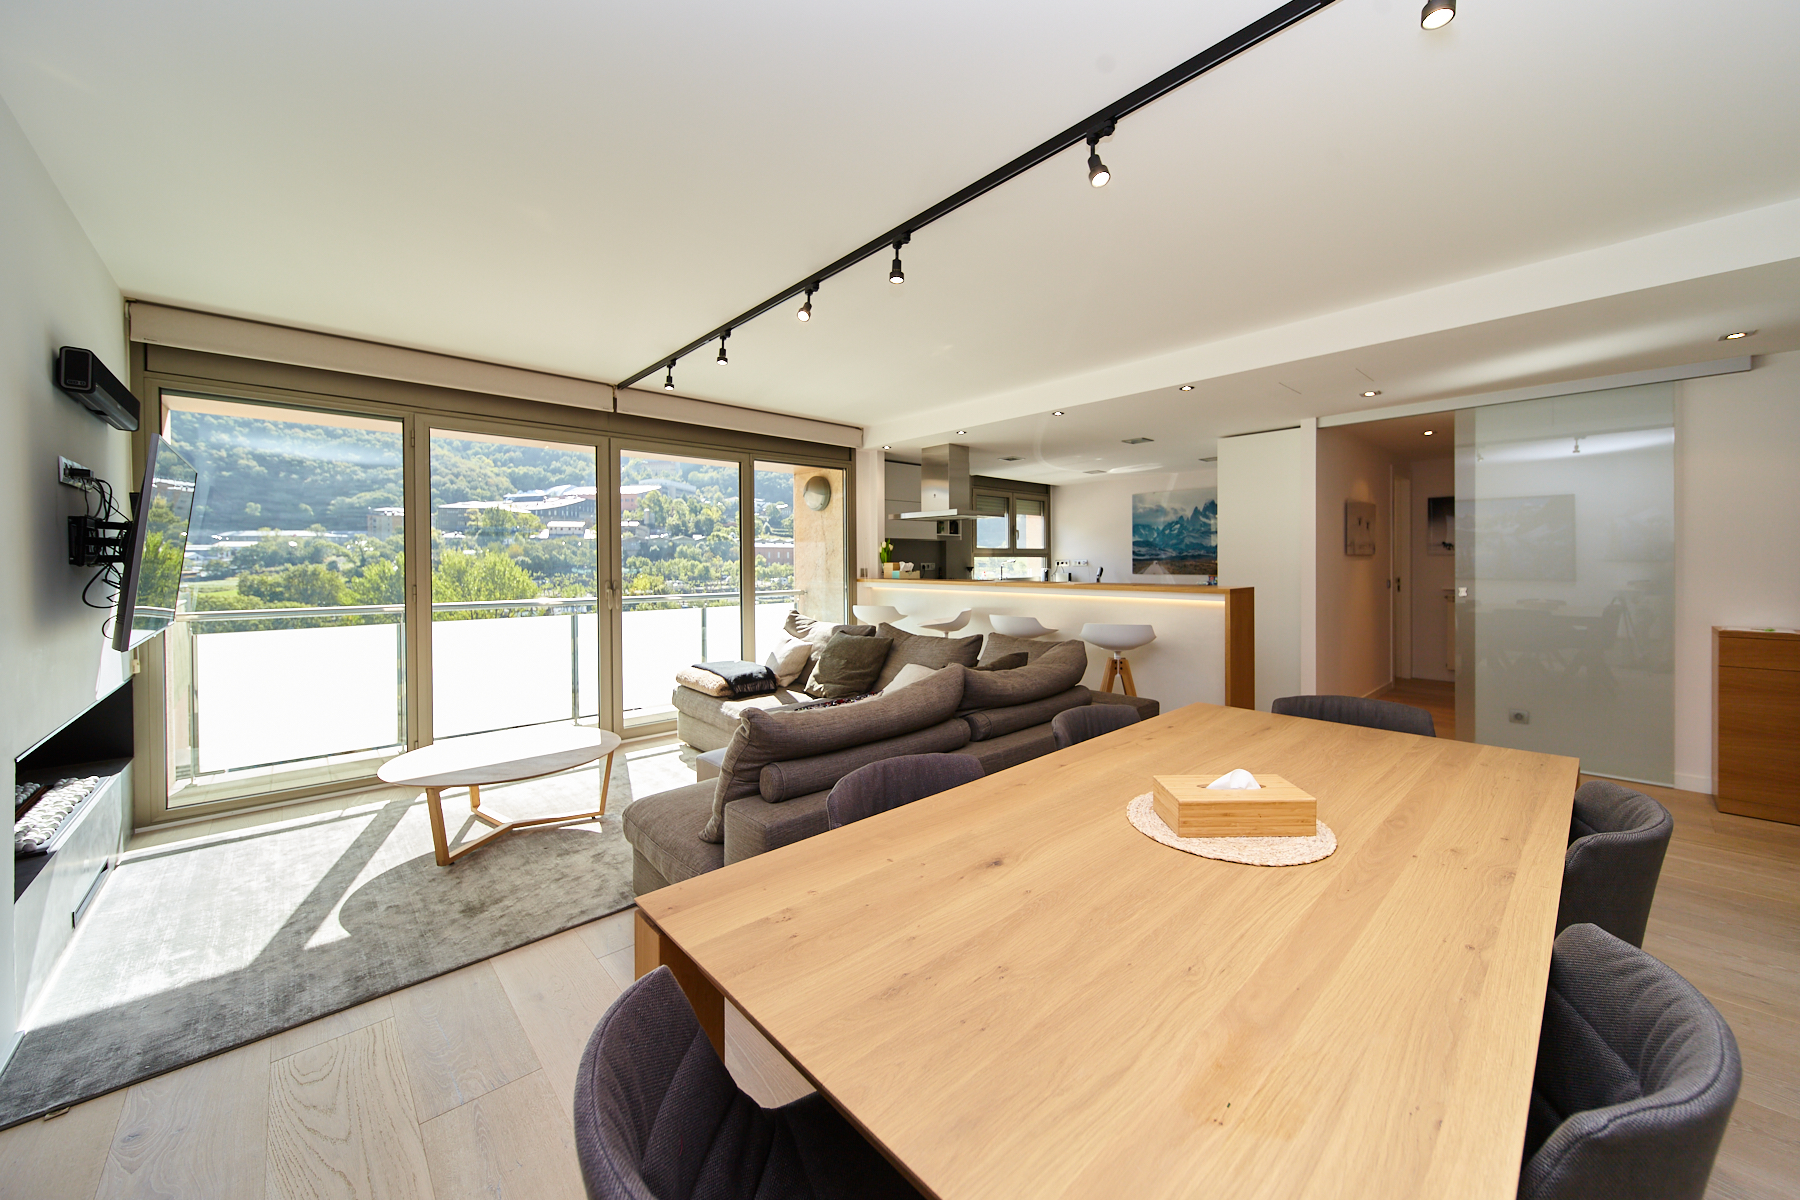 Piso en venta en Andorra la Vella, 3 habitaciones, 120 metros